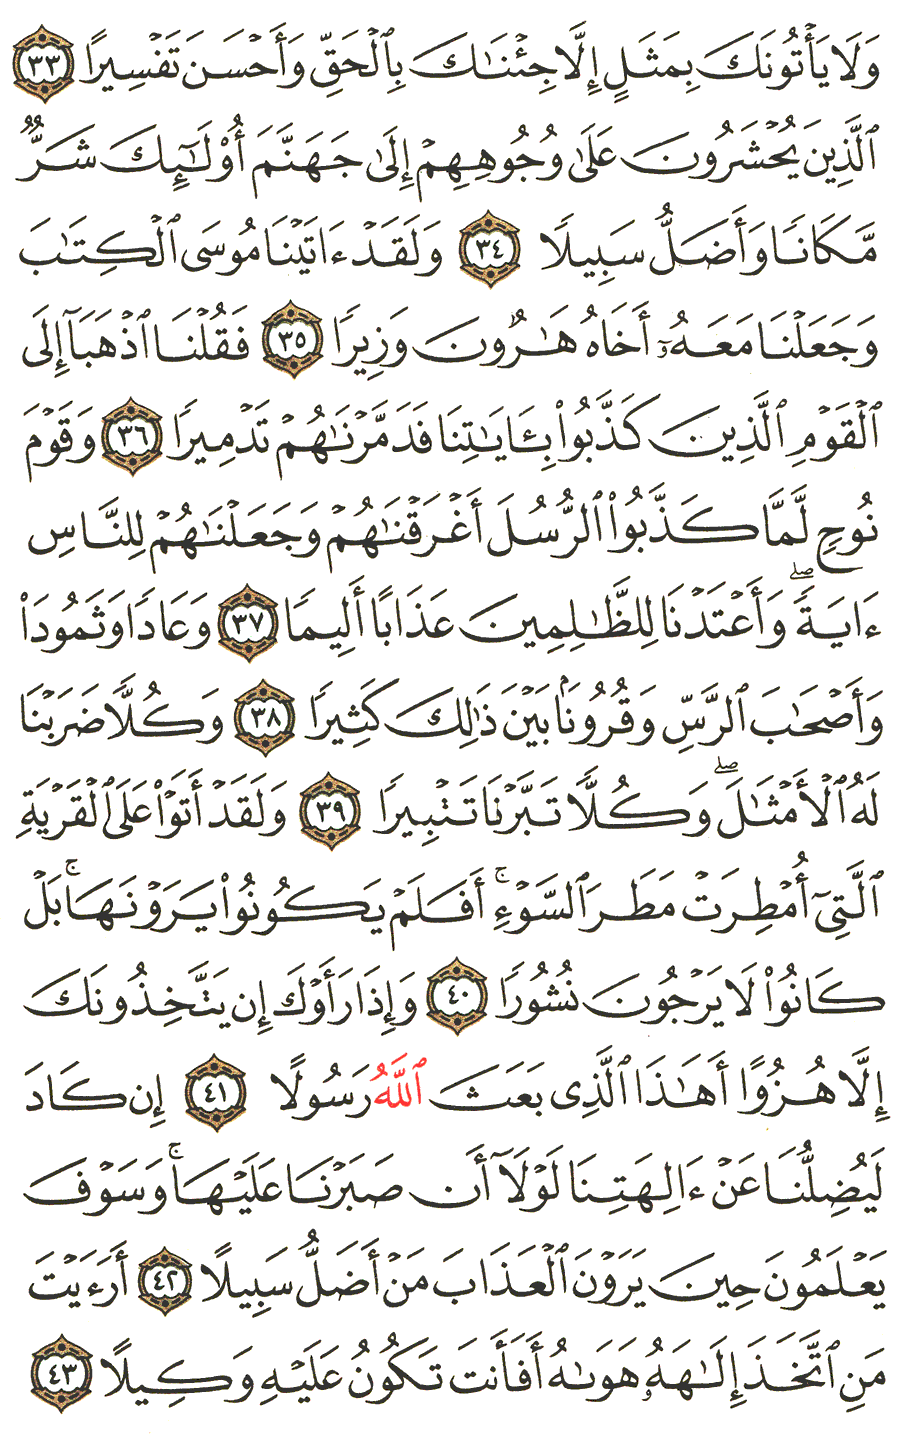 الصفحة 363 من القرآن الكريم